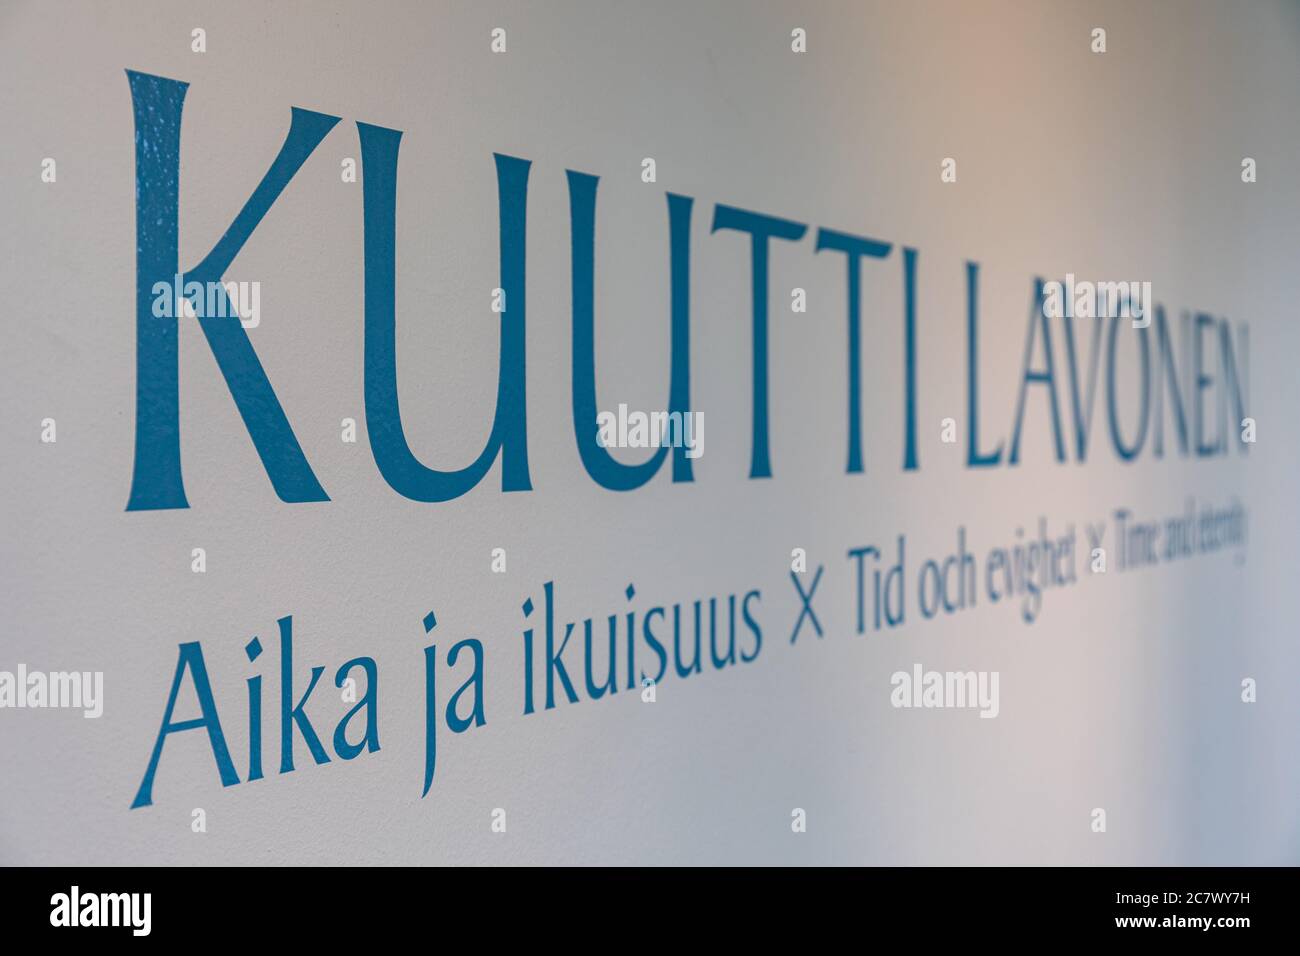 Aika ja ikuisuus or Time and Eternity, Kuutti Lavonen exhibition at Didrichsen Art Museum in Helsinki, Finland Stock Photo